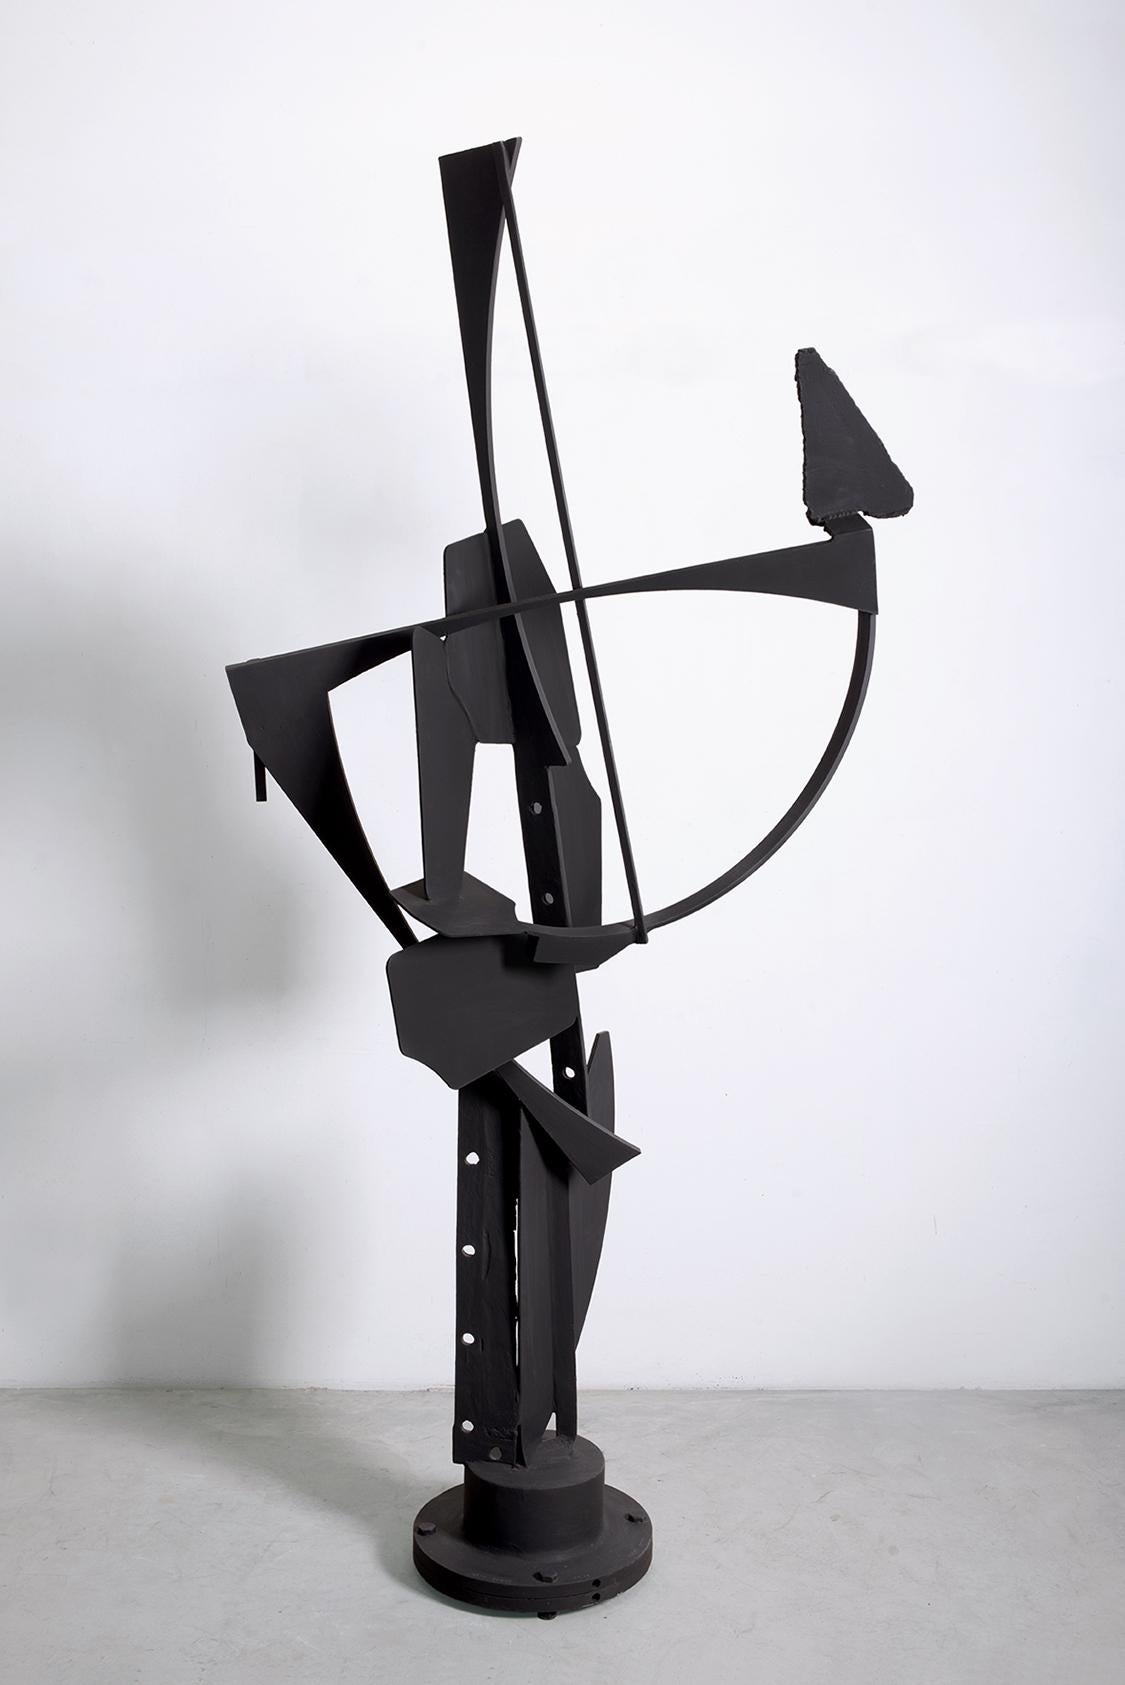 Alex Corno Abstract Sculpture - Miami Star